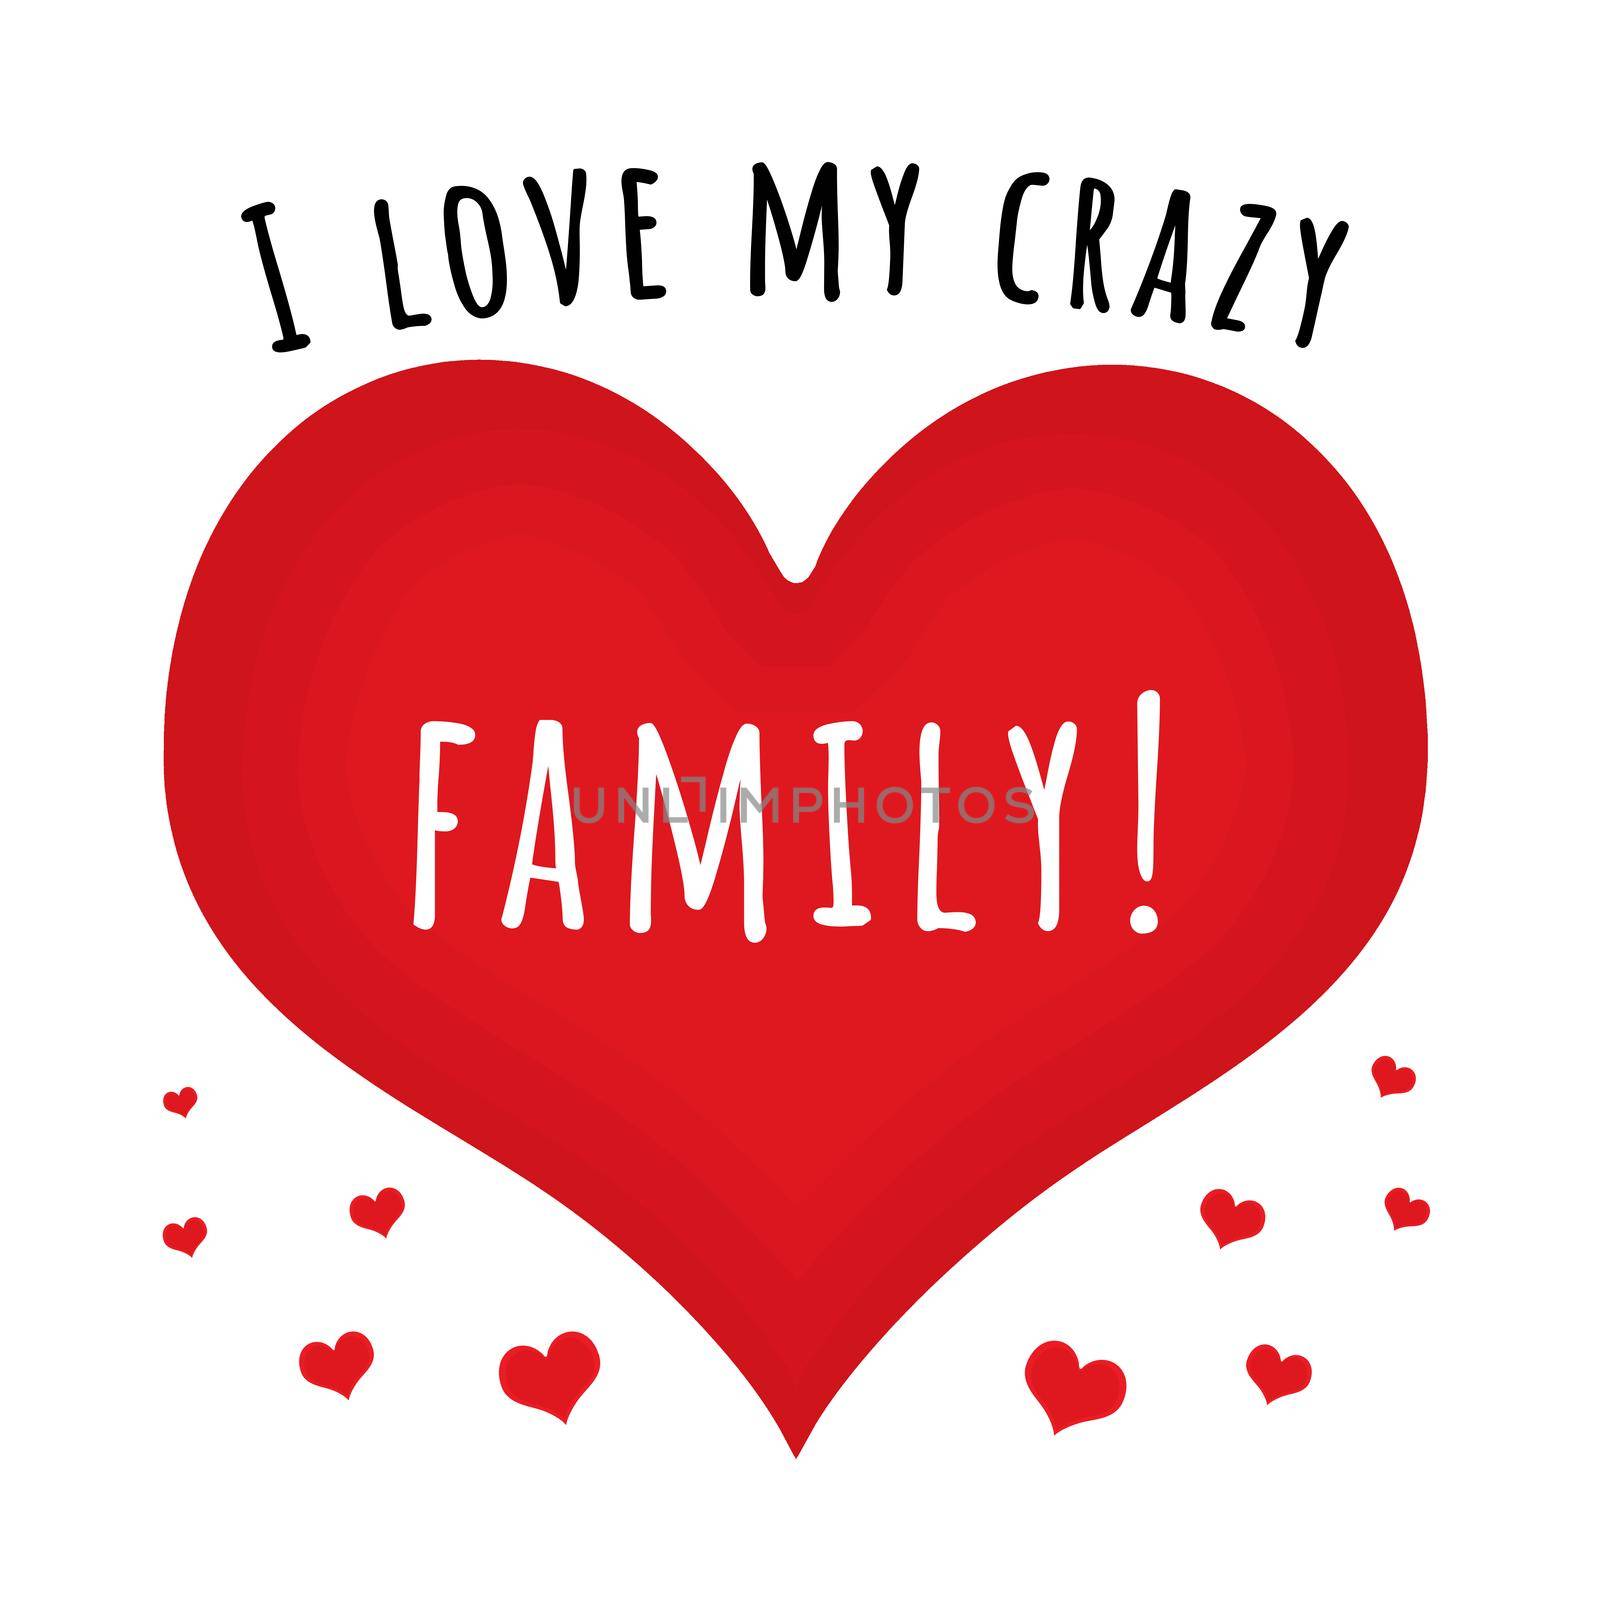 I love my crazy family by Bigalbaloo